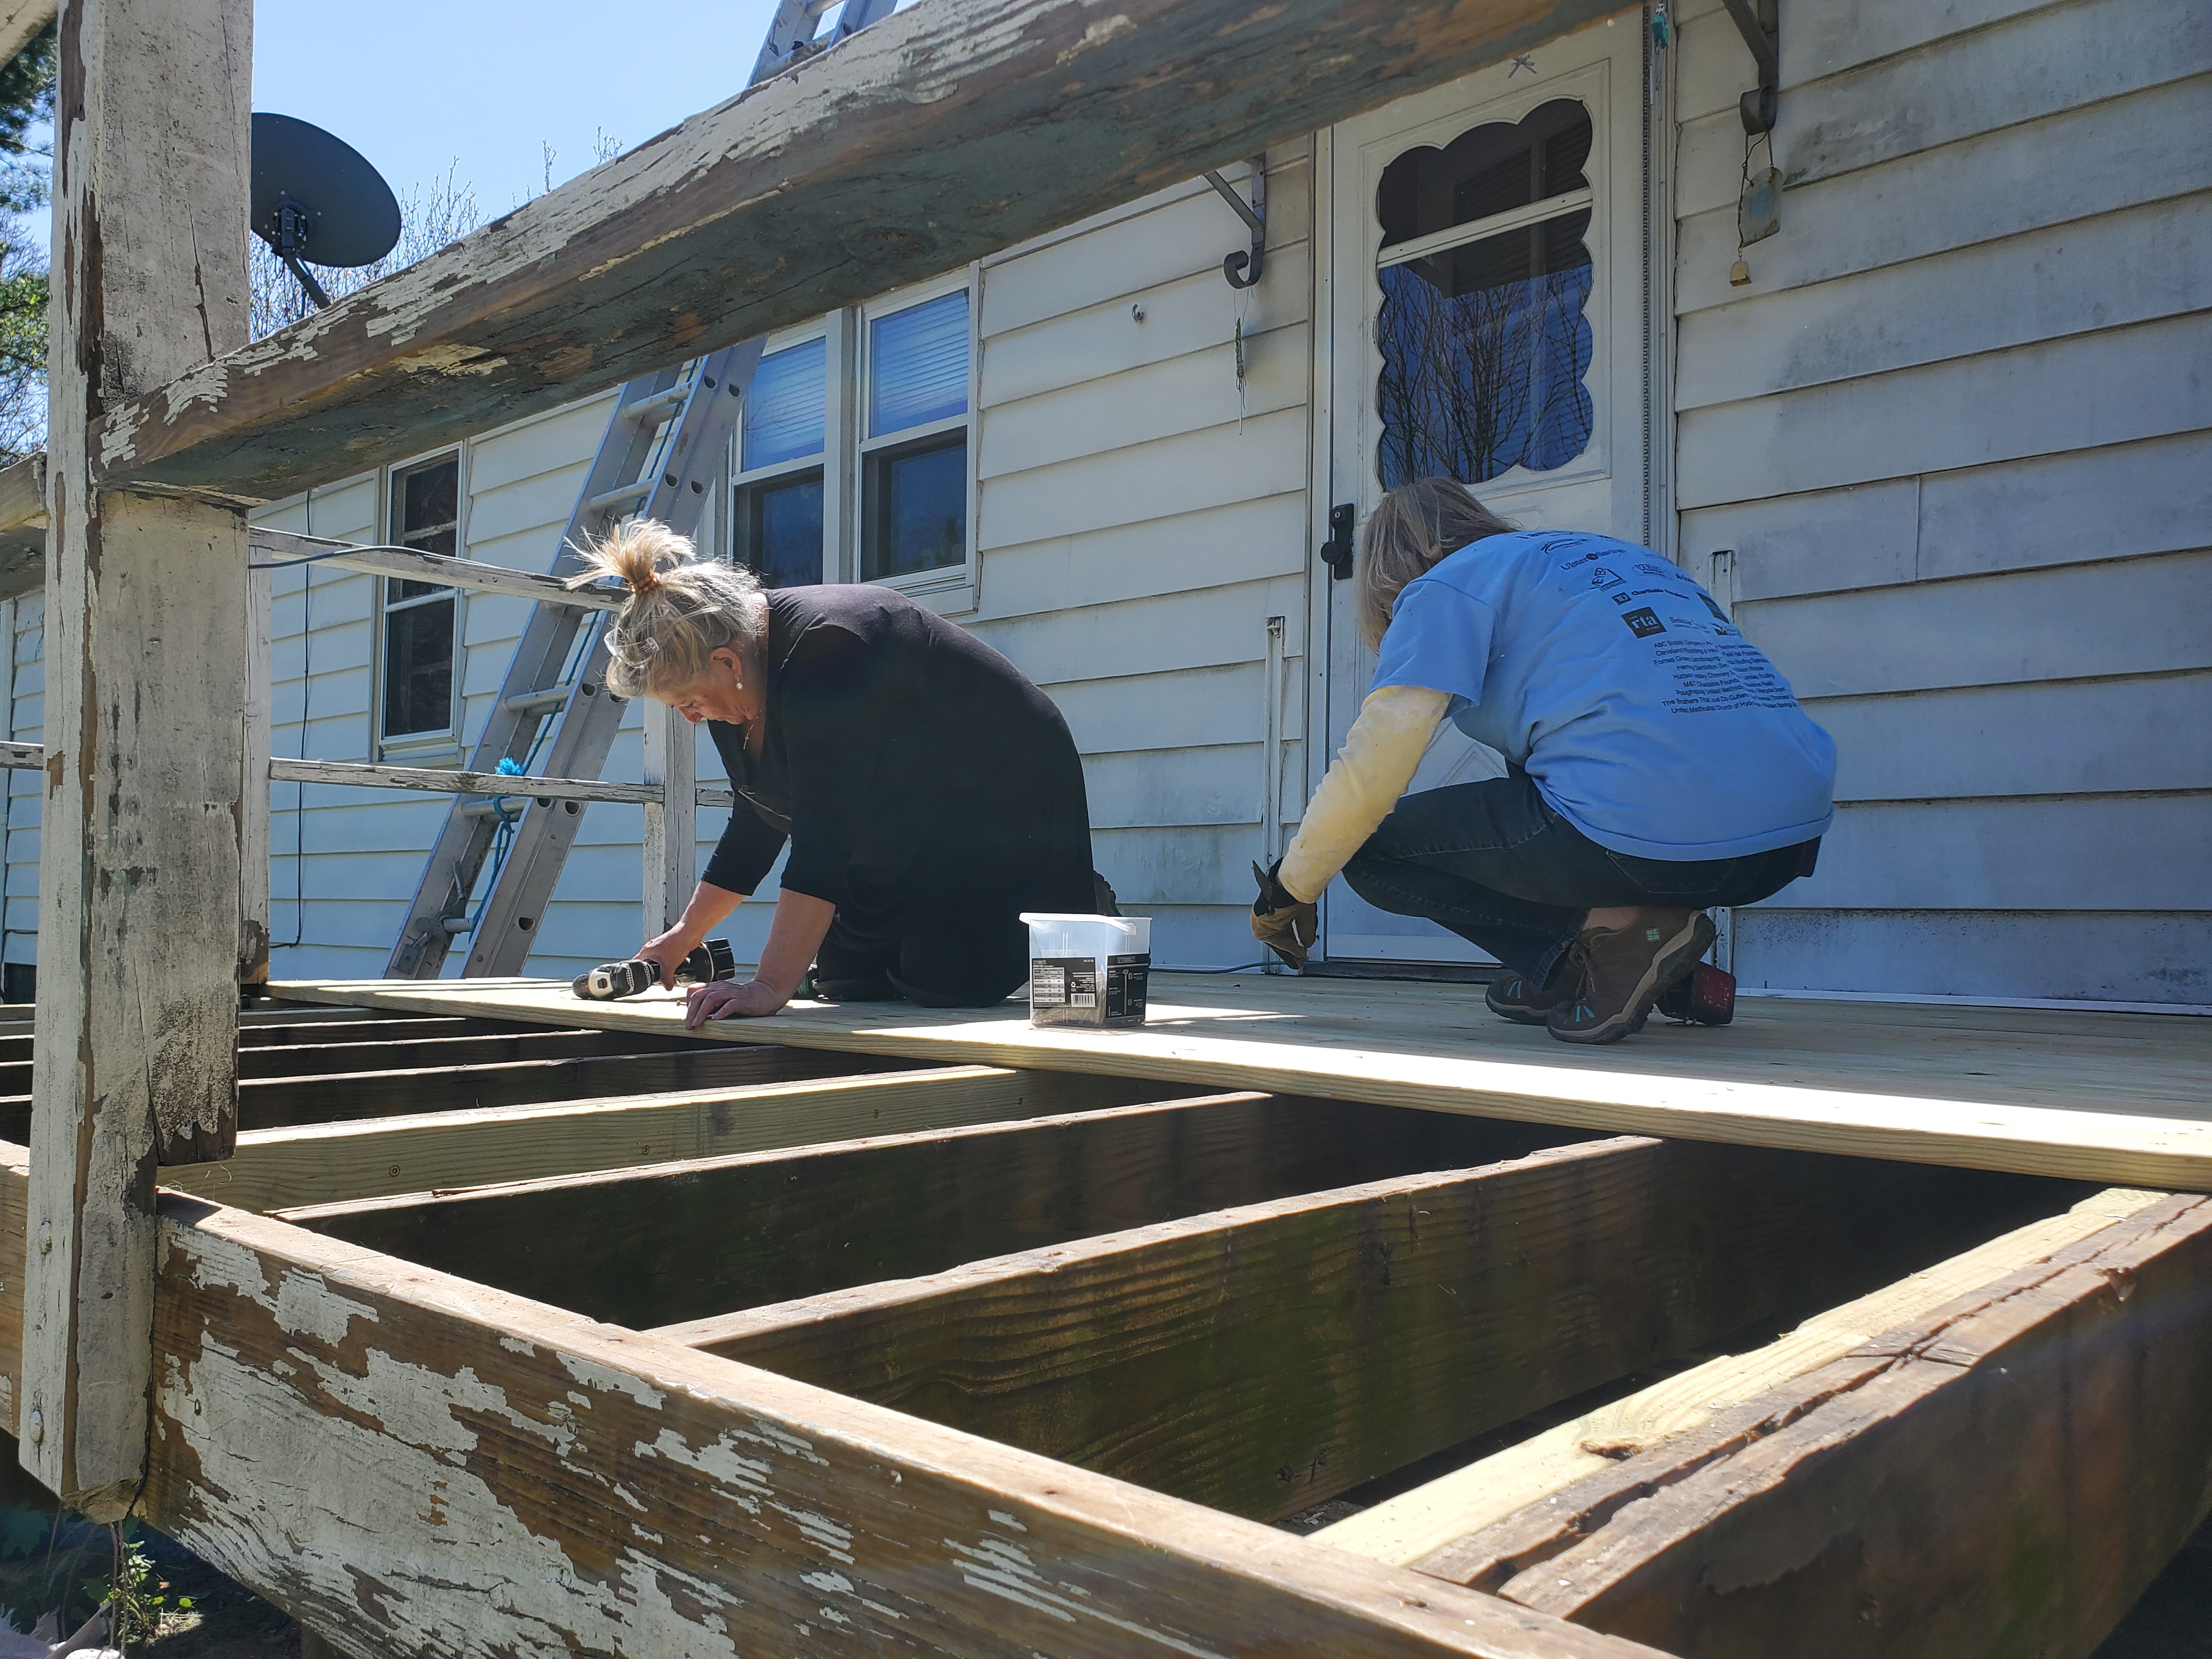 Volunteers working hard on a deck in great need of repair.